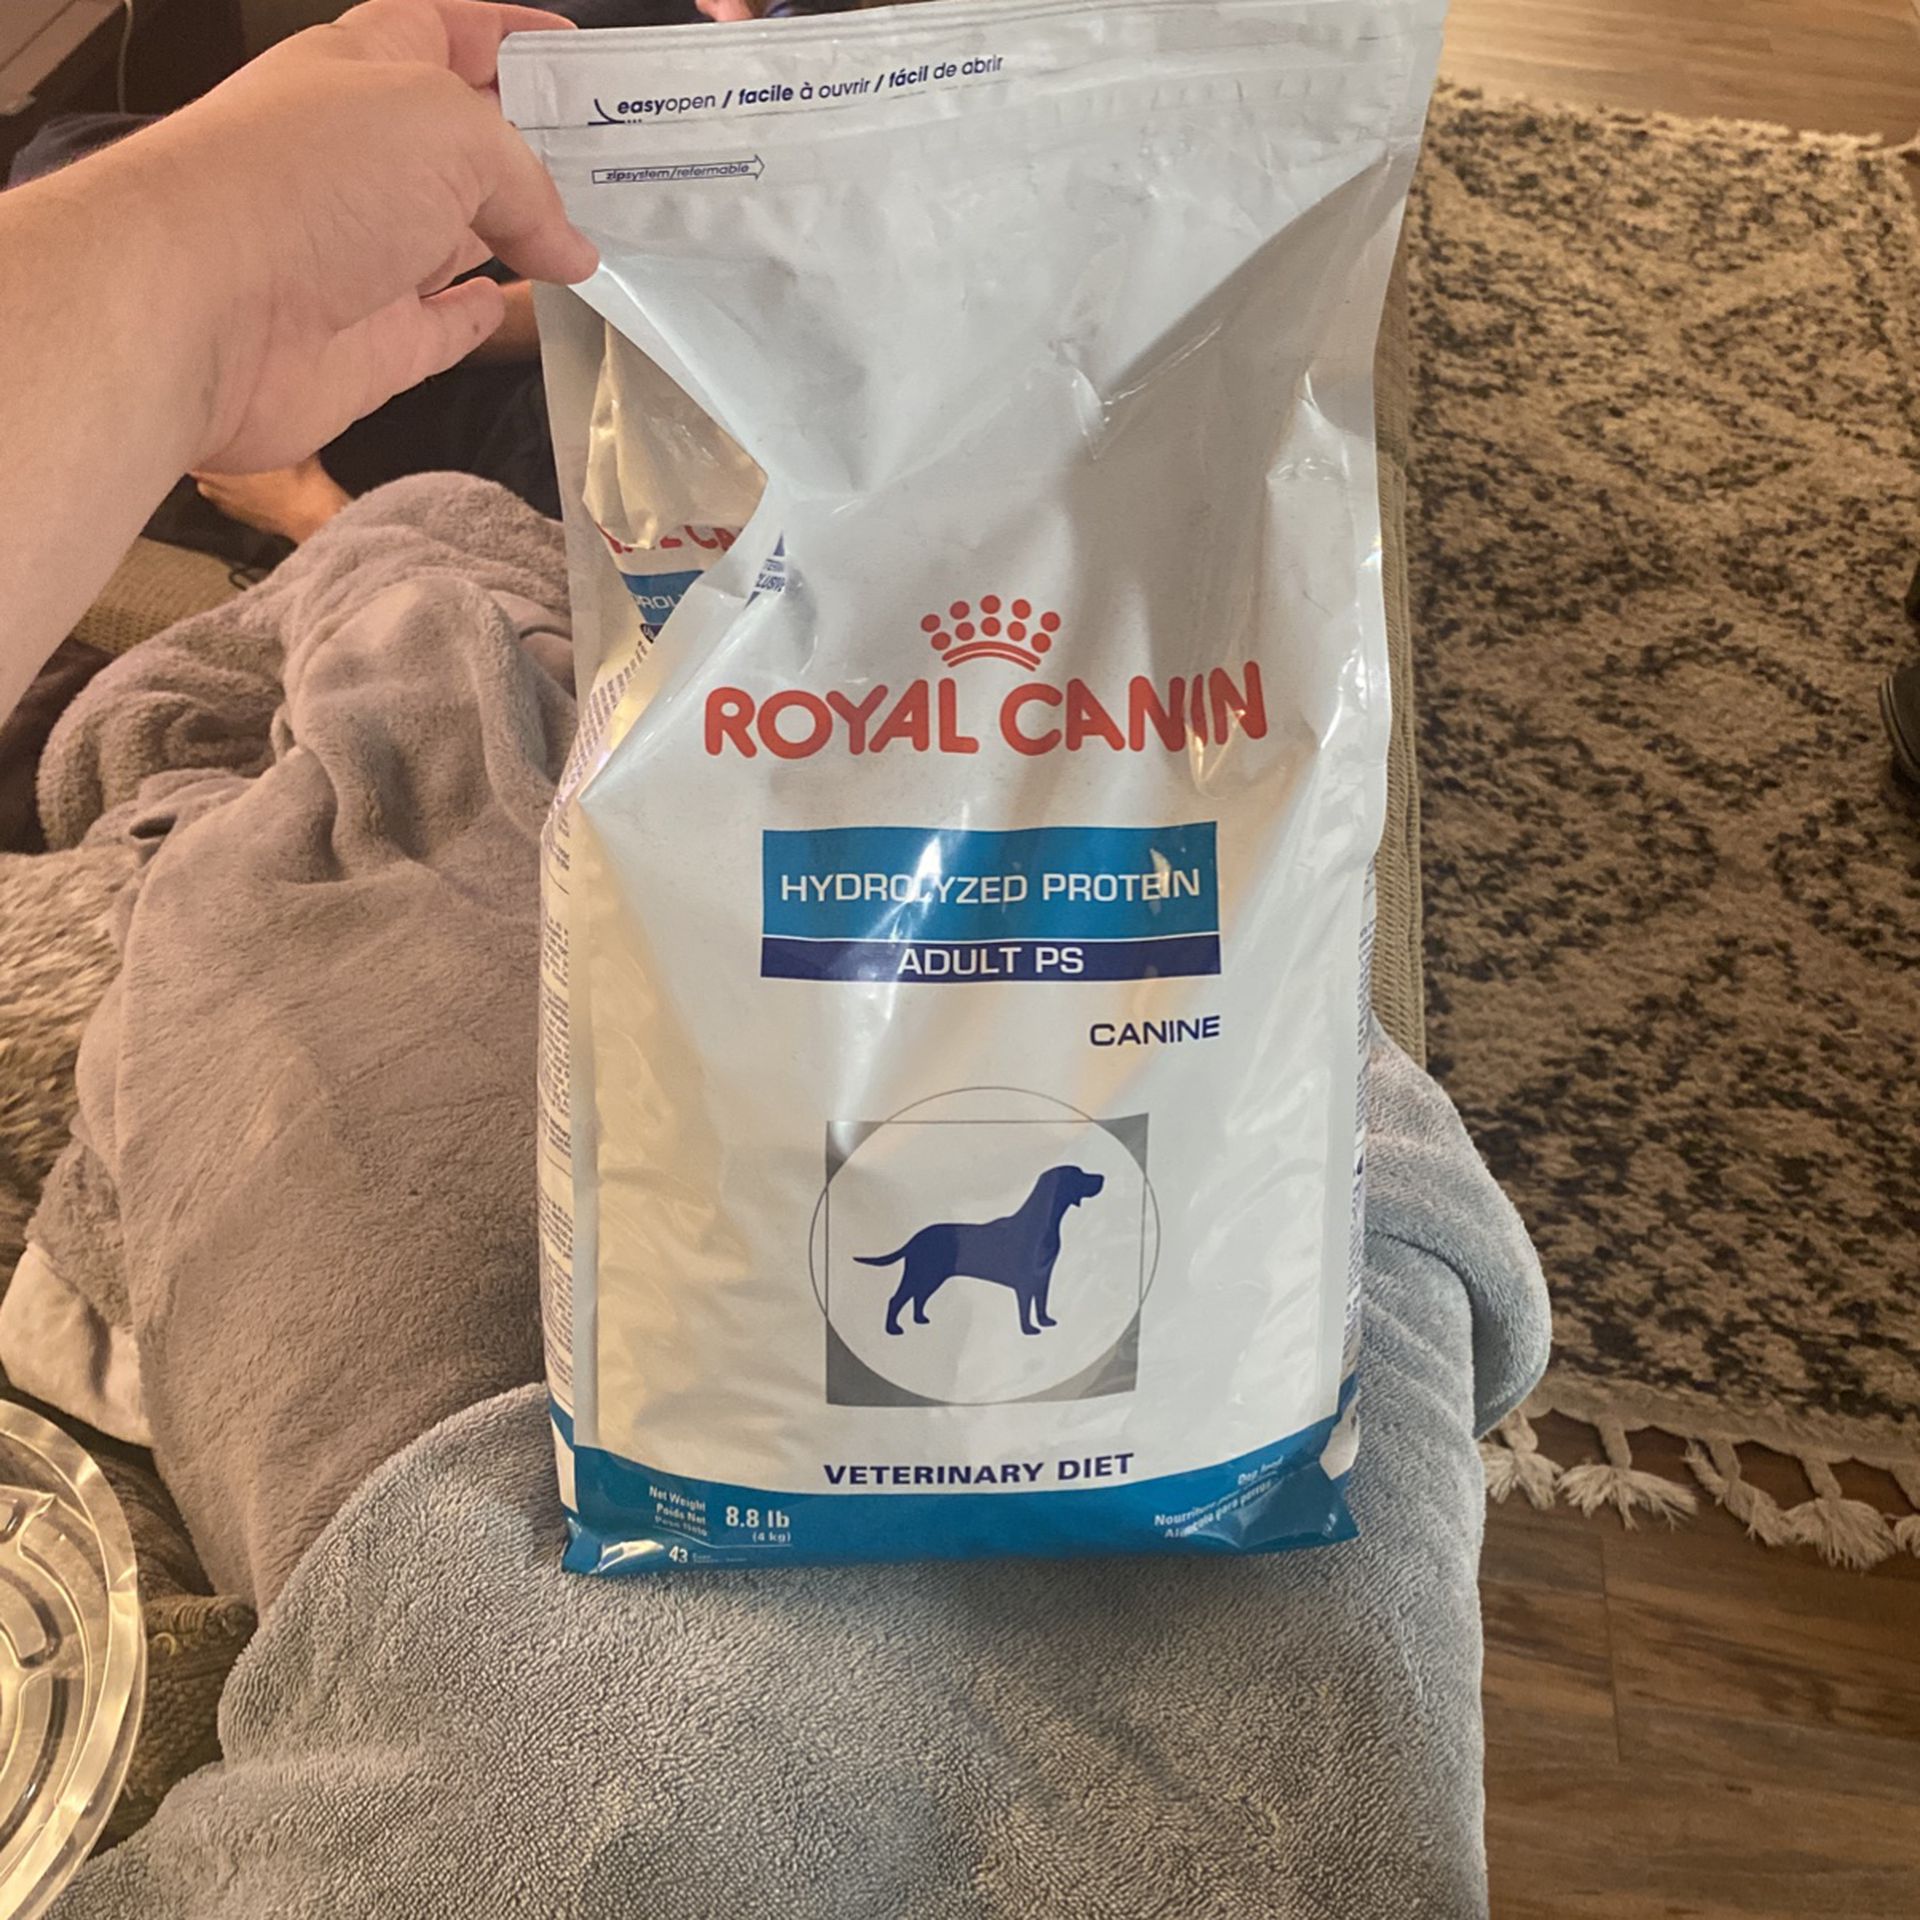 Royal Canin Hydrolyzed Protein Food 